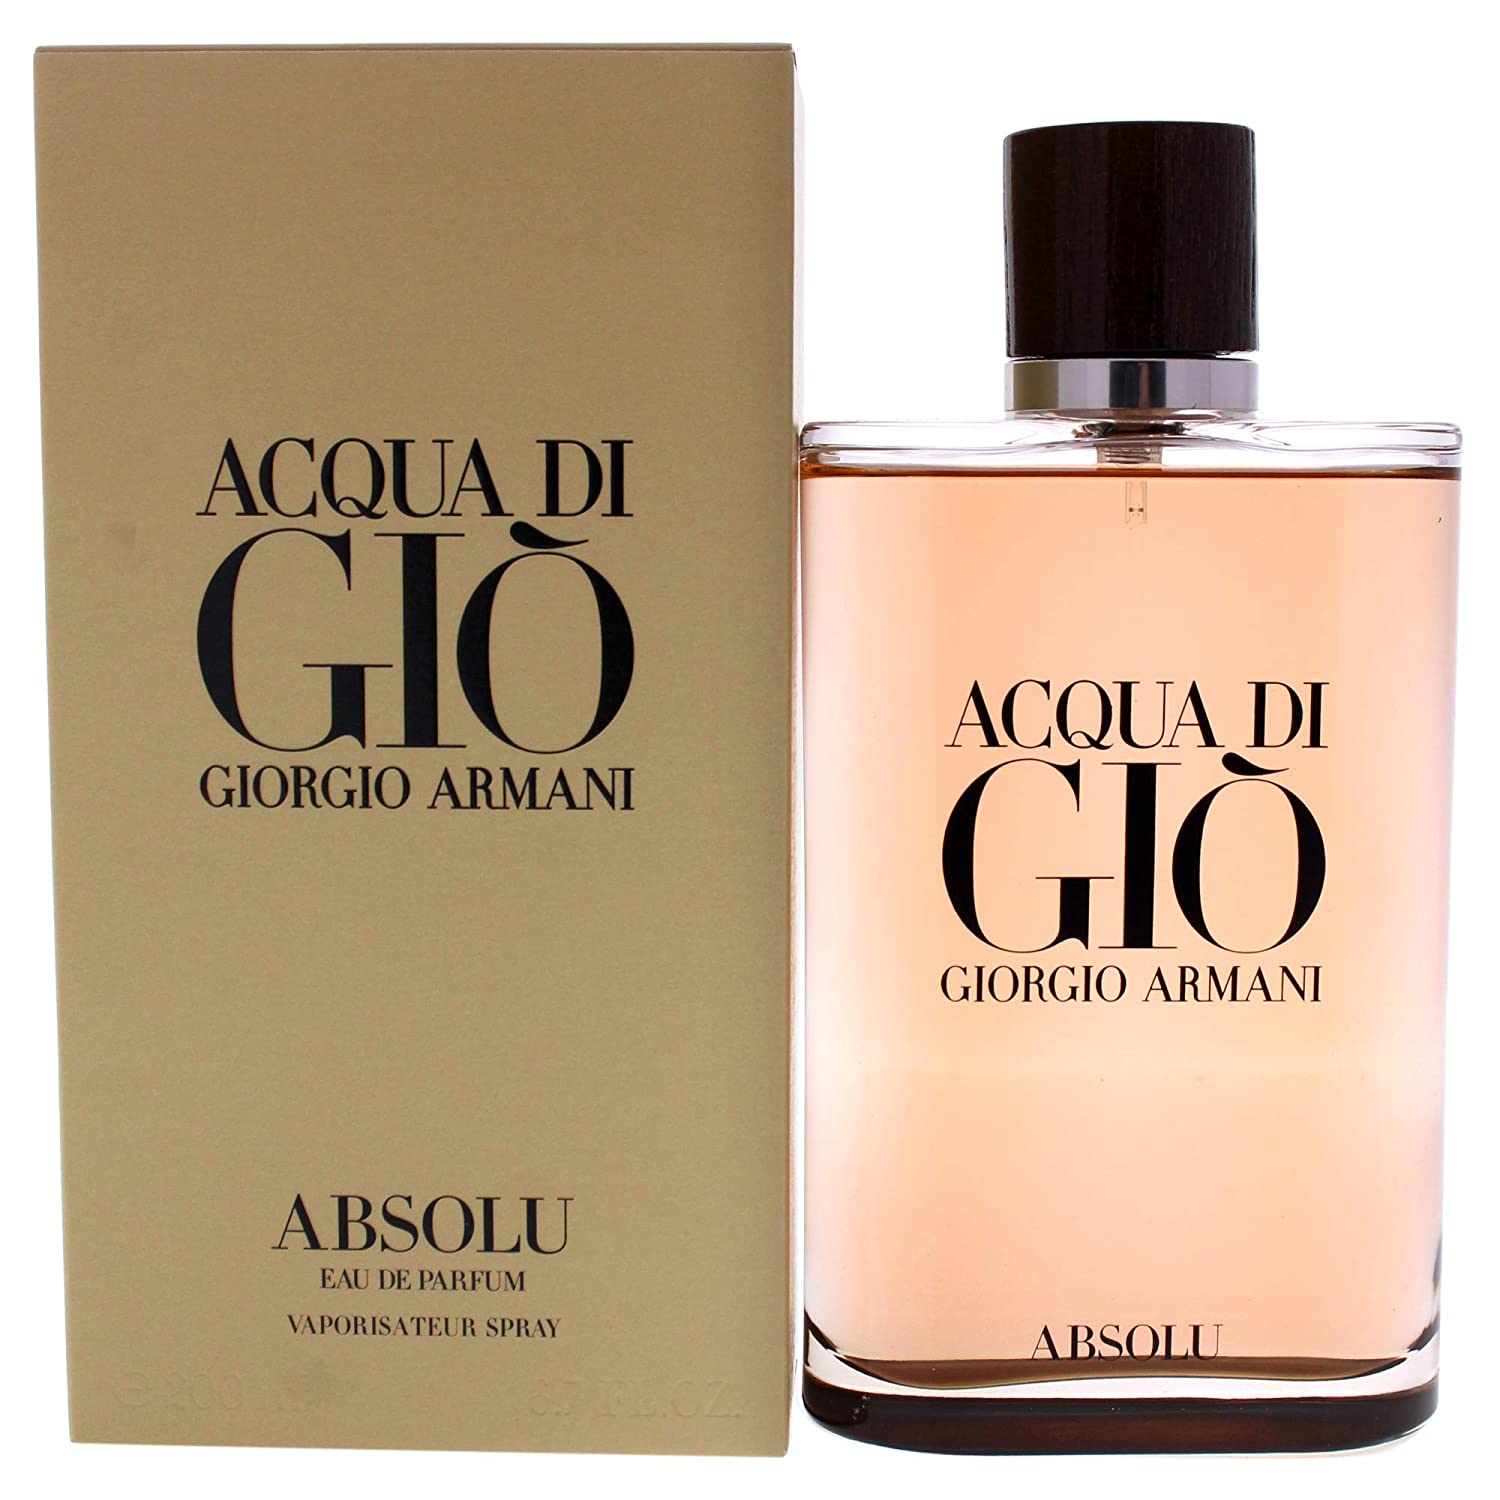 Acqua di Gio Absolu by Giorgio Armani 4.2 oz EDP Spray for Men